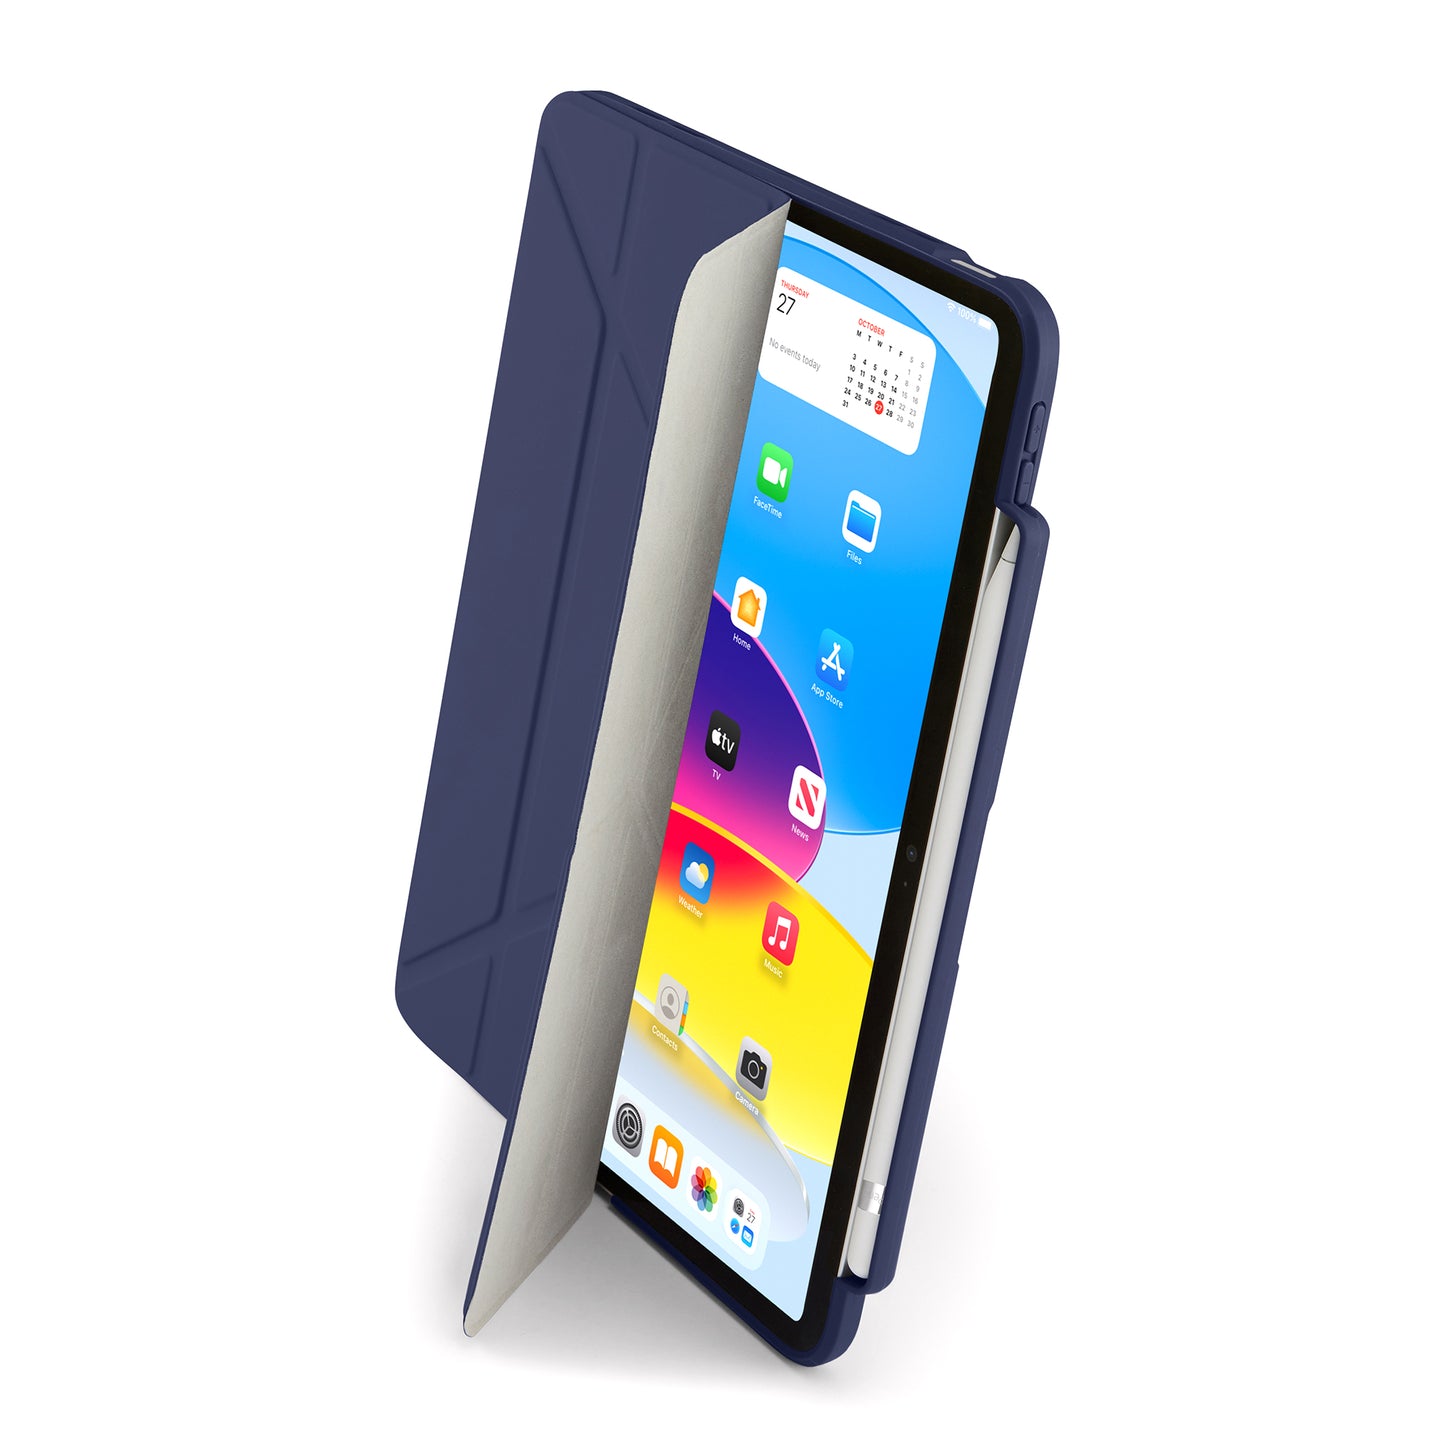 PIPETTO Origami No3 Case for iPad 10th Gen (2022) - Dark Blue